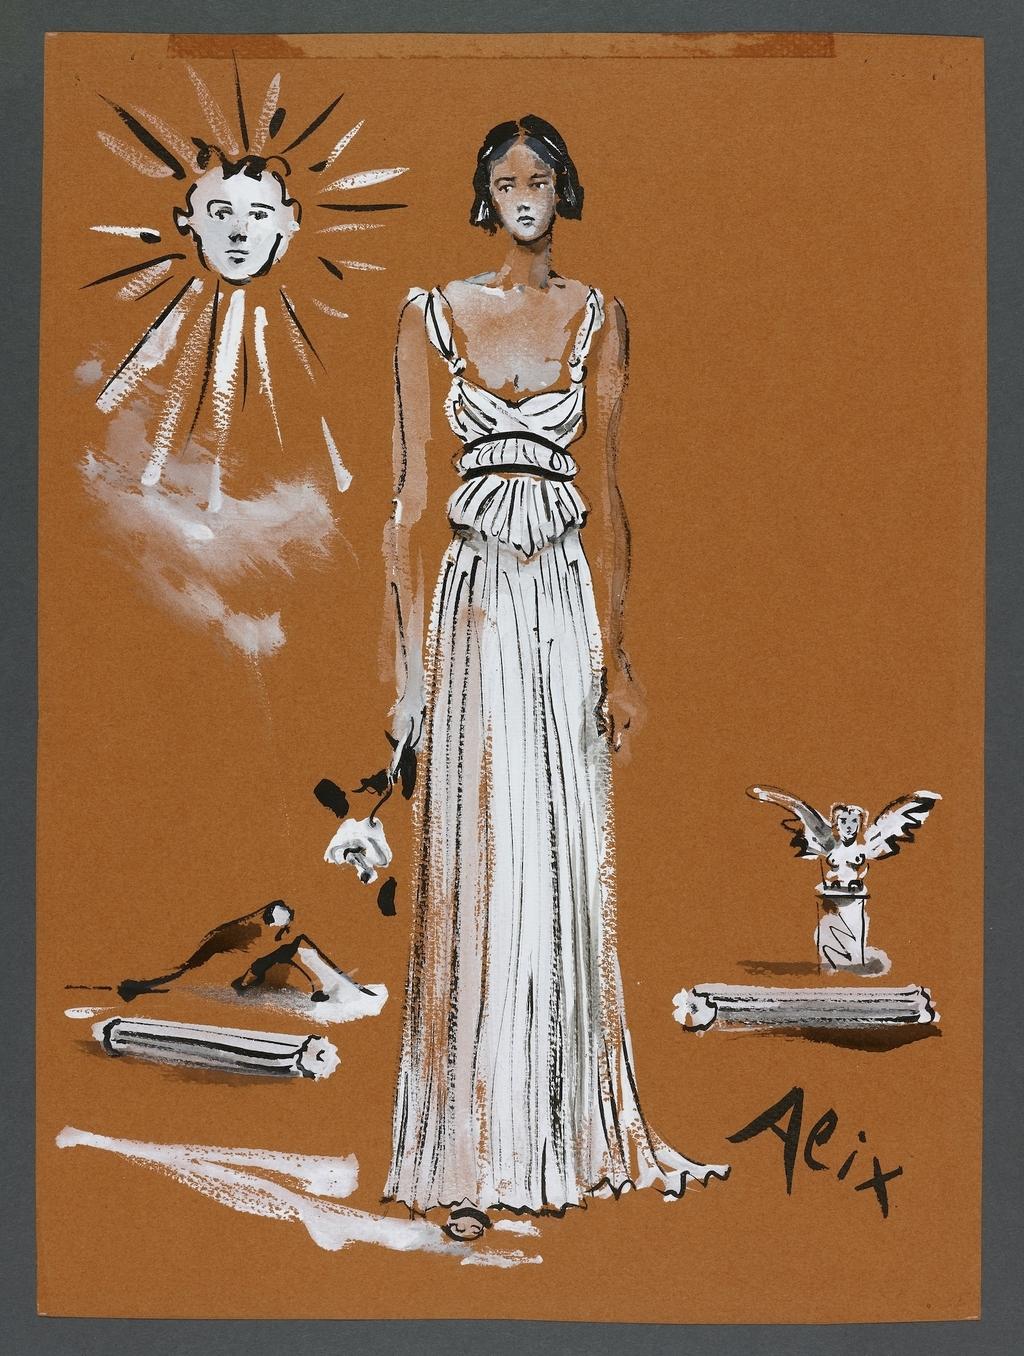 Alix dress, Vogue Paris October 1938